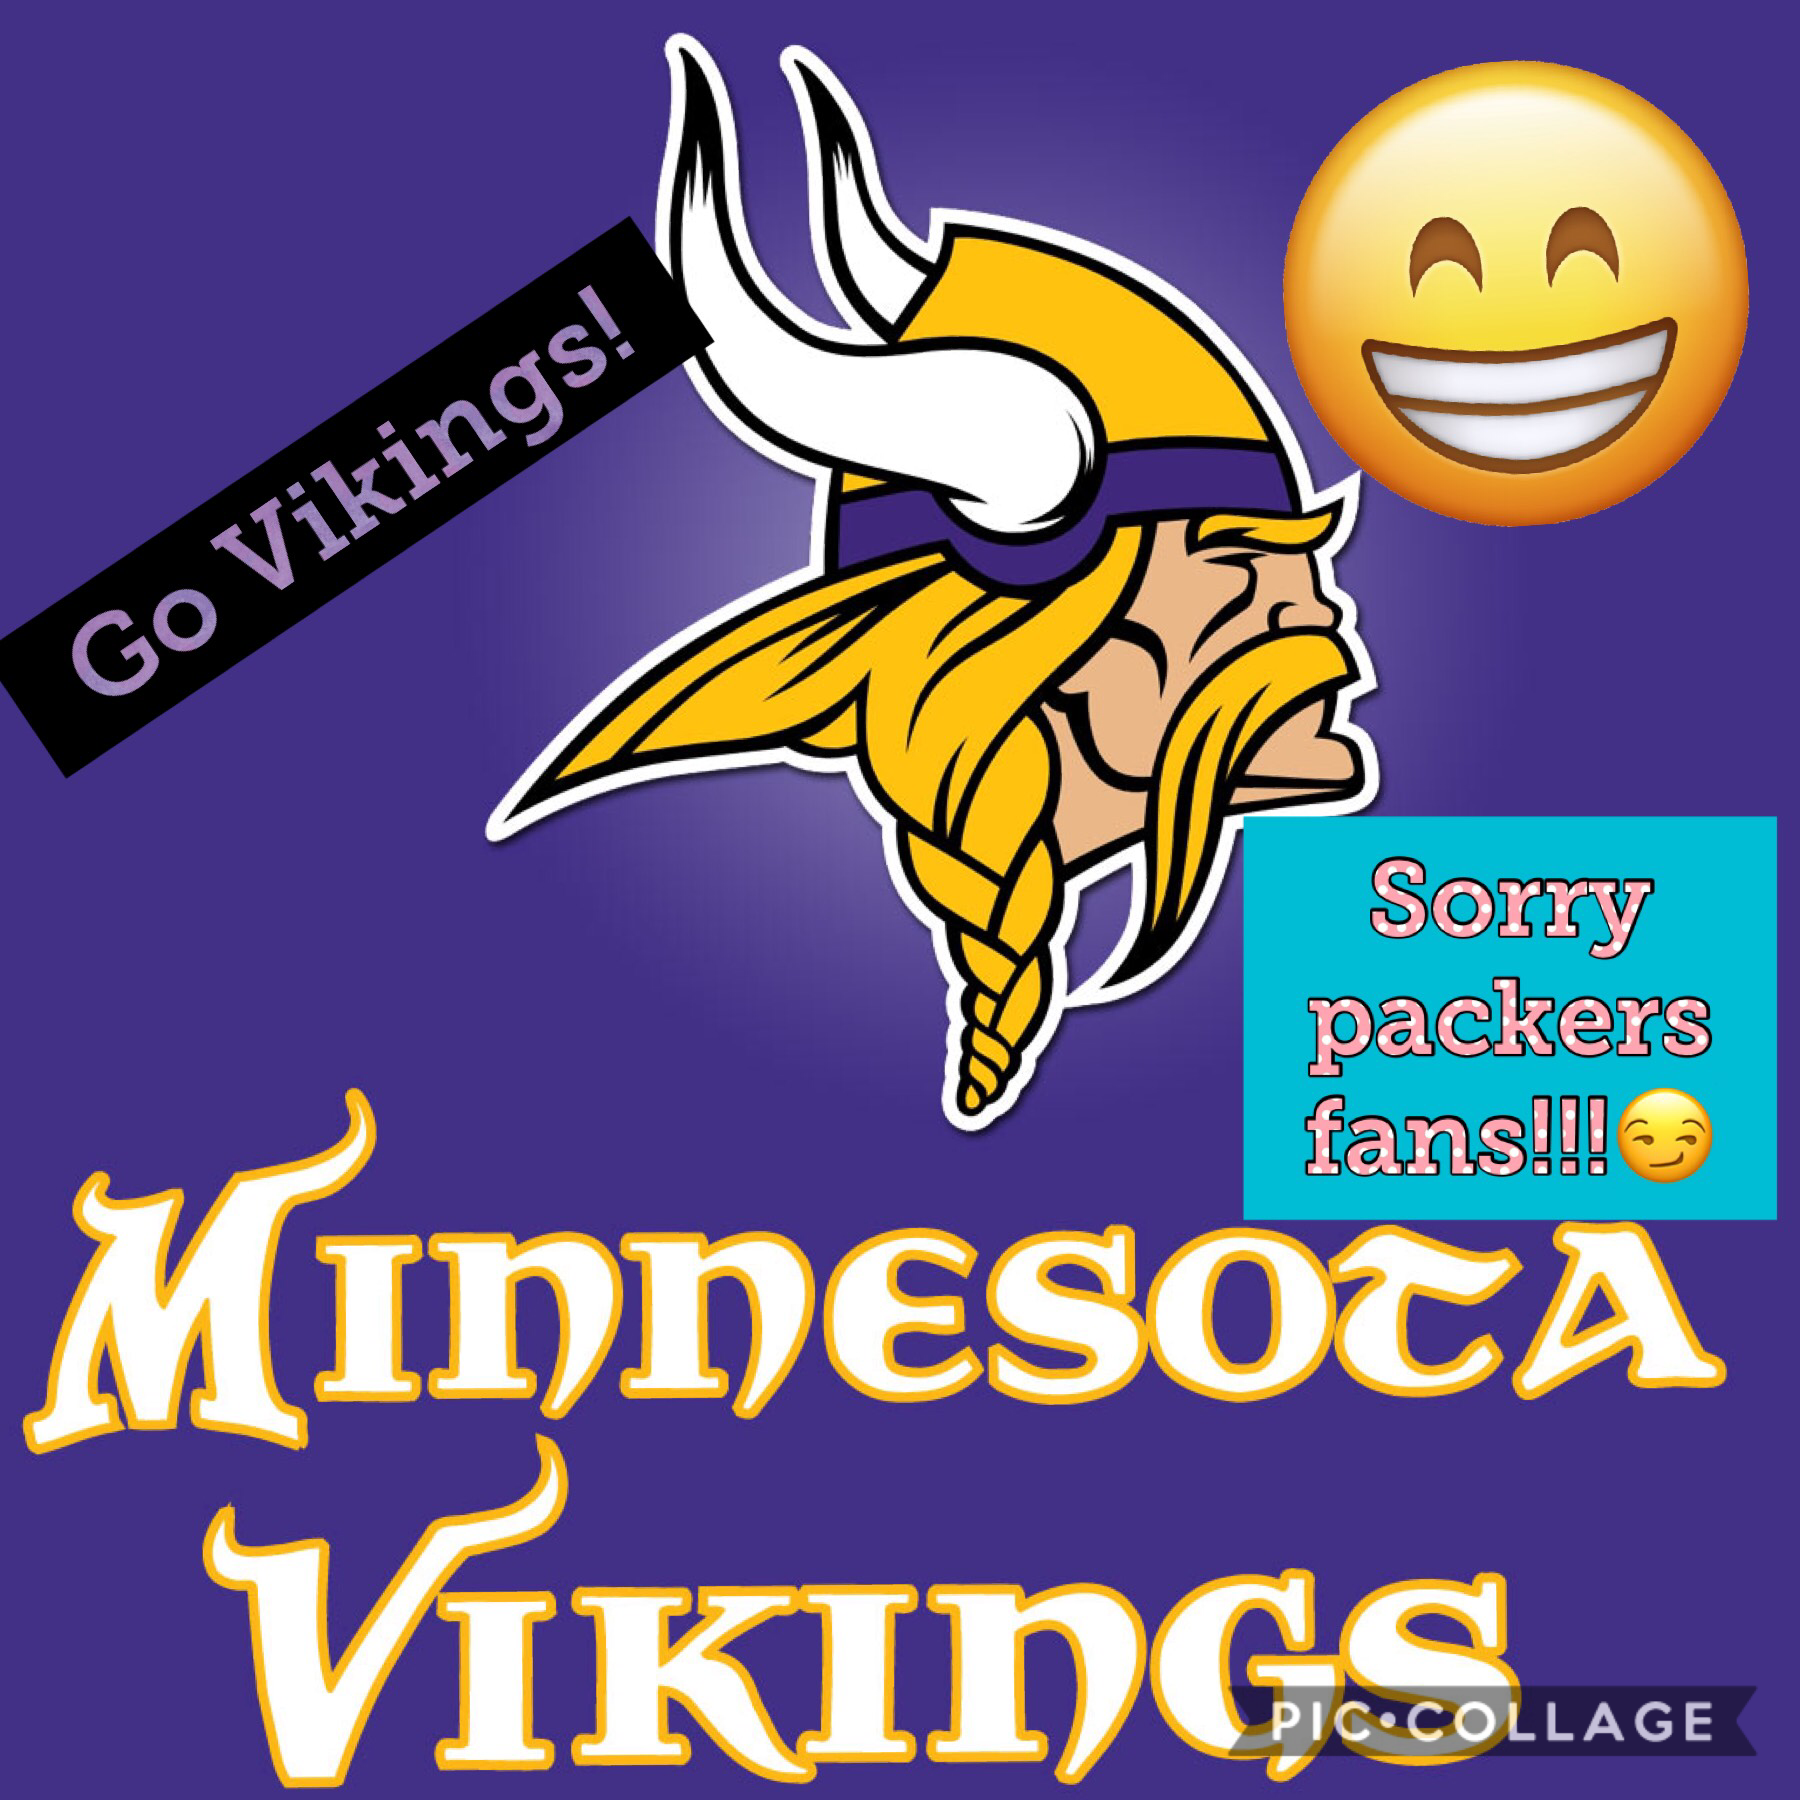 Vikings won!!!